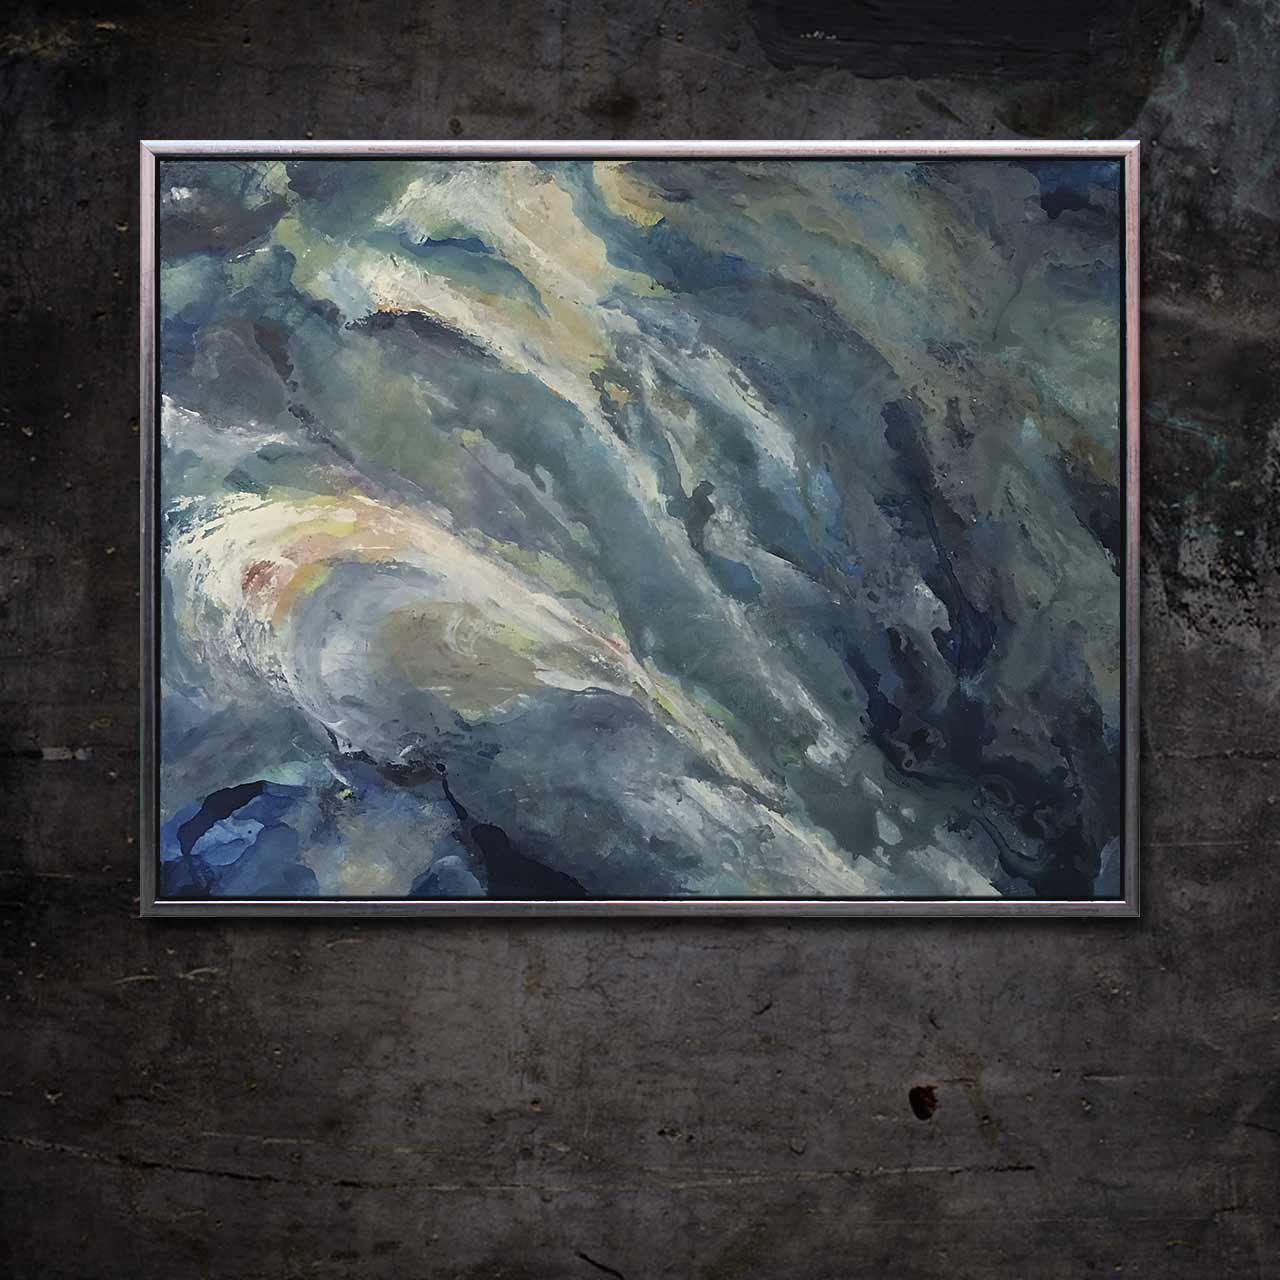 Maleri med titlen 'Jorden i Bevægelse' af billedkunstner Peter Simonsen.